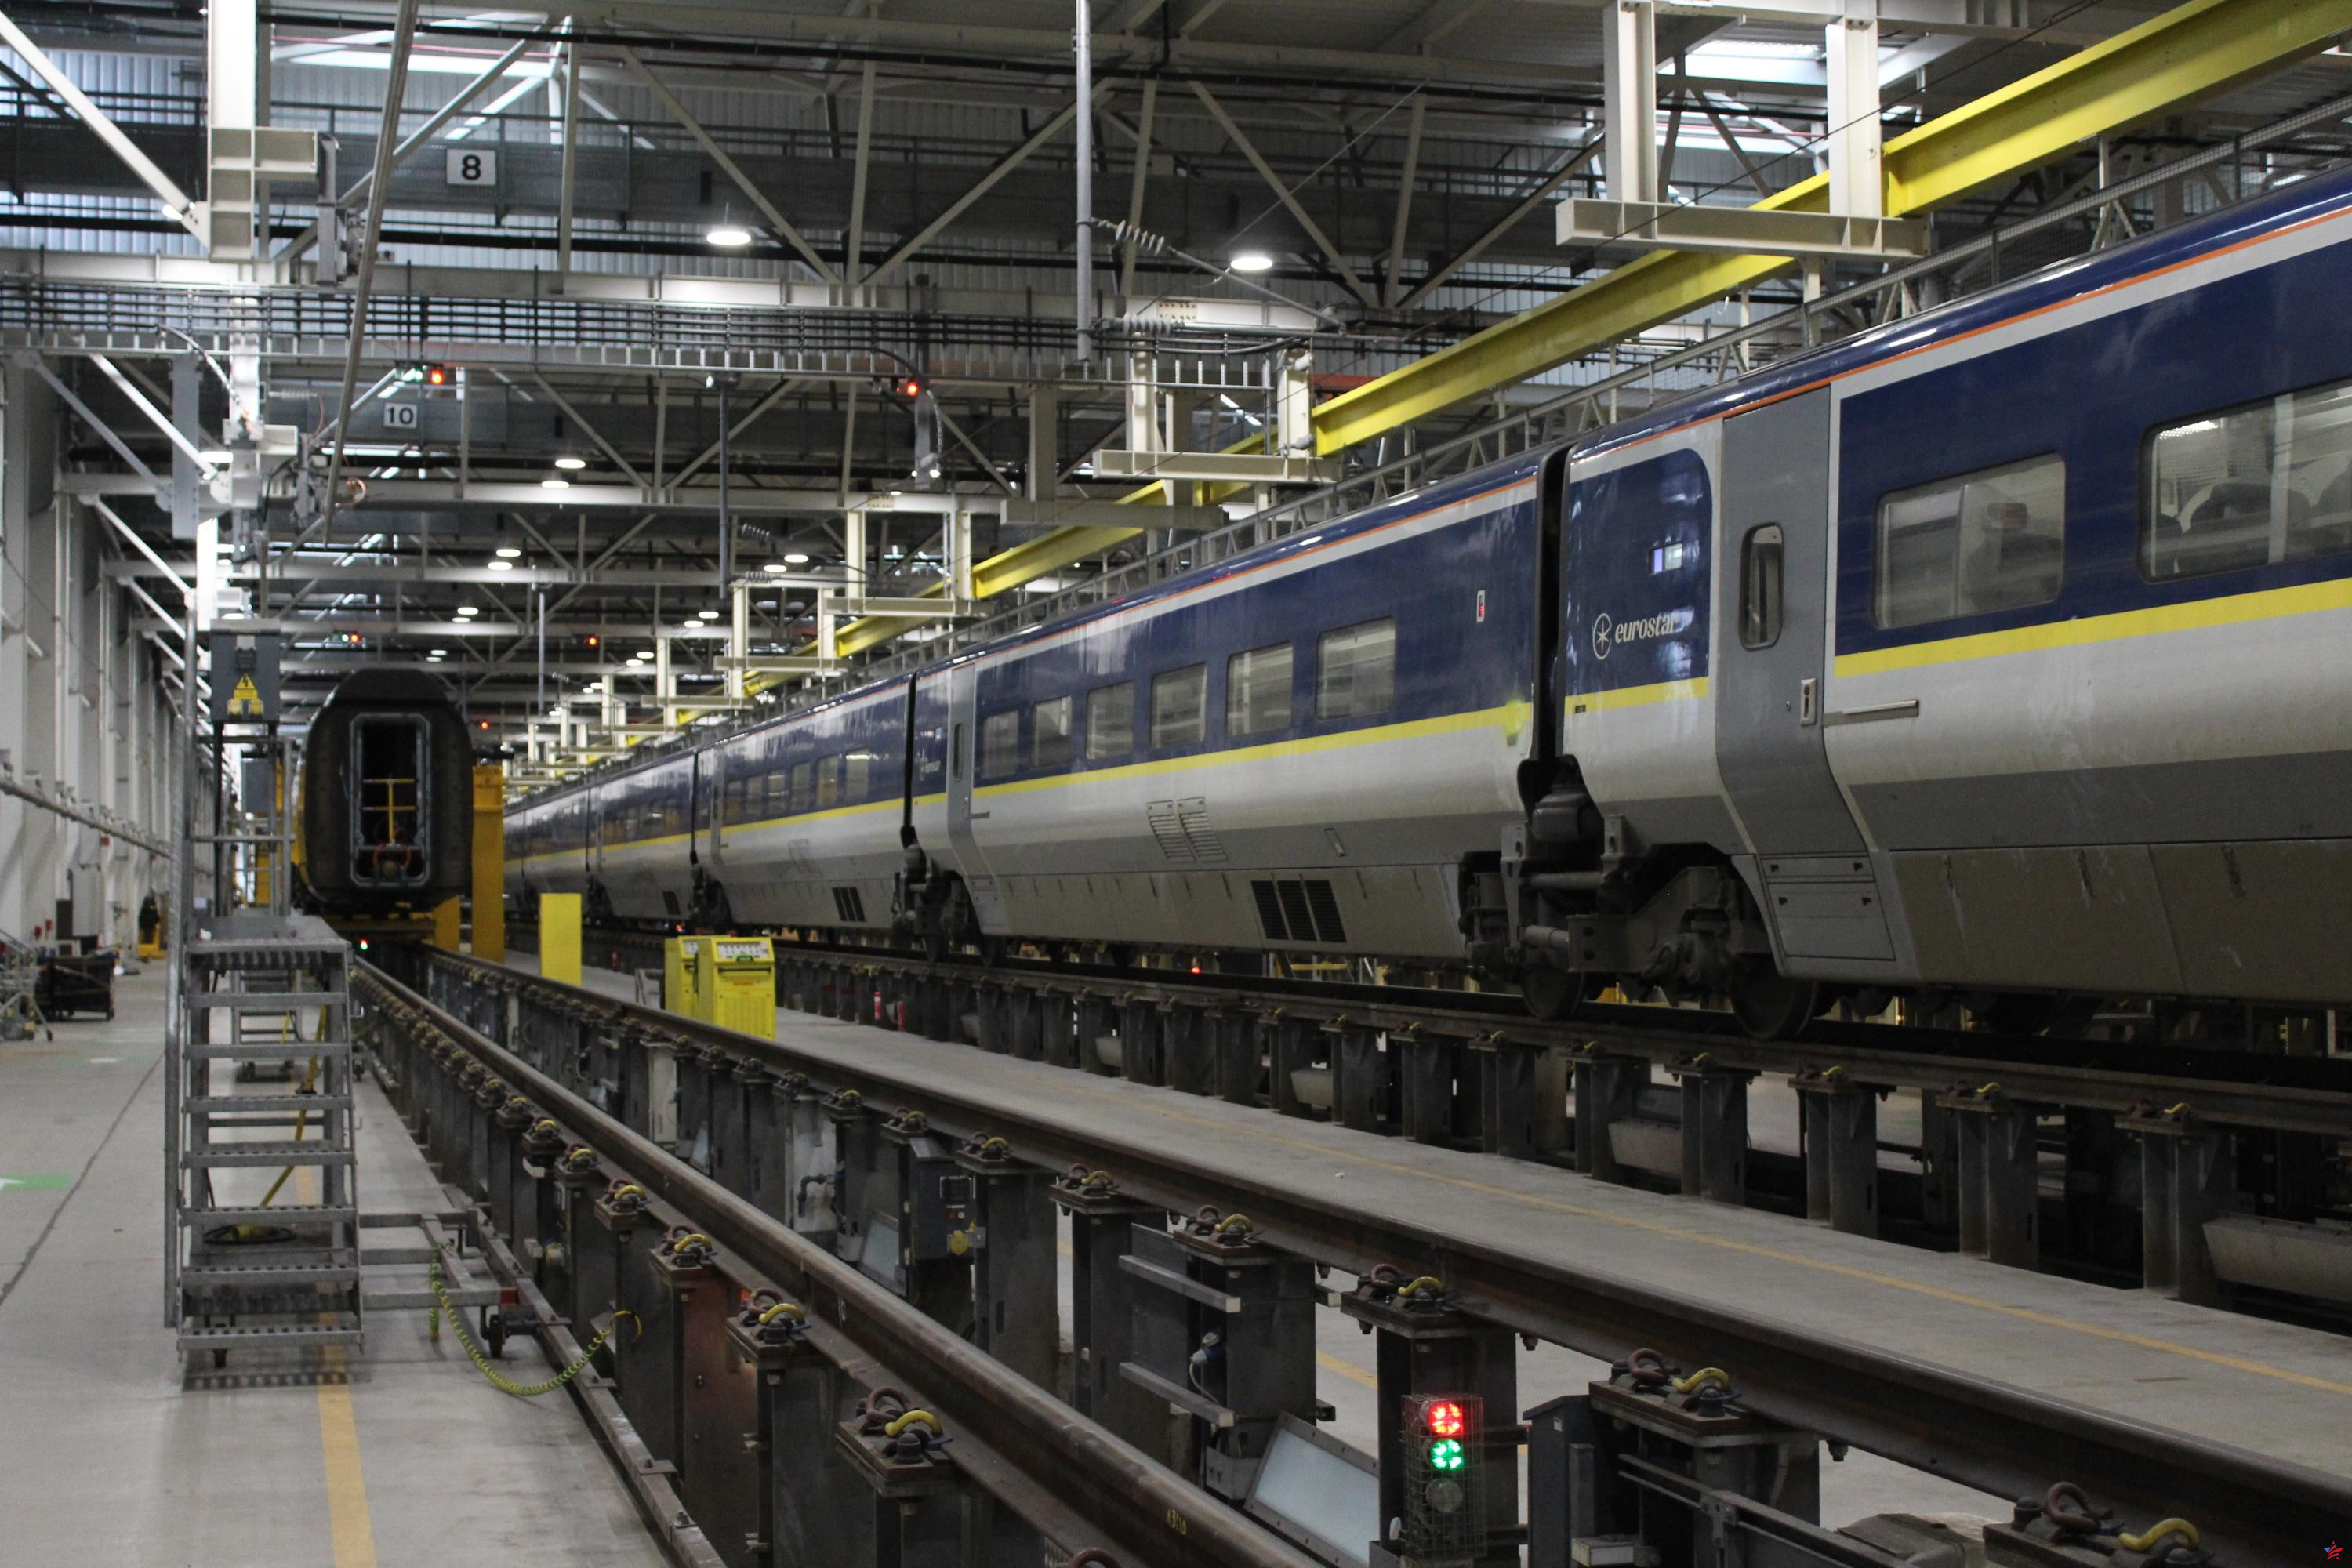 El Eurostar cumple 30 años: entre bastidores en el centro de mantenimiento de trenes que cruzan el Canal de la Mancha en Londres